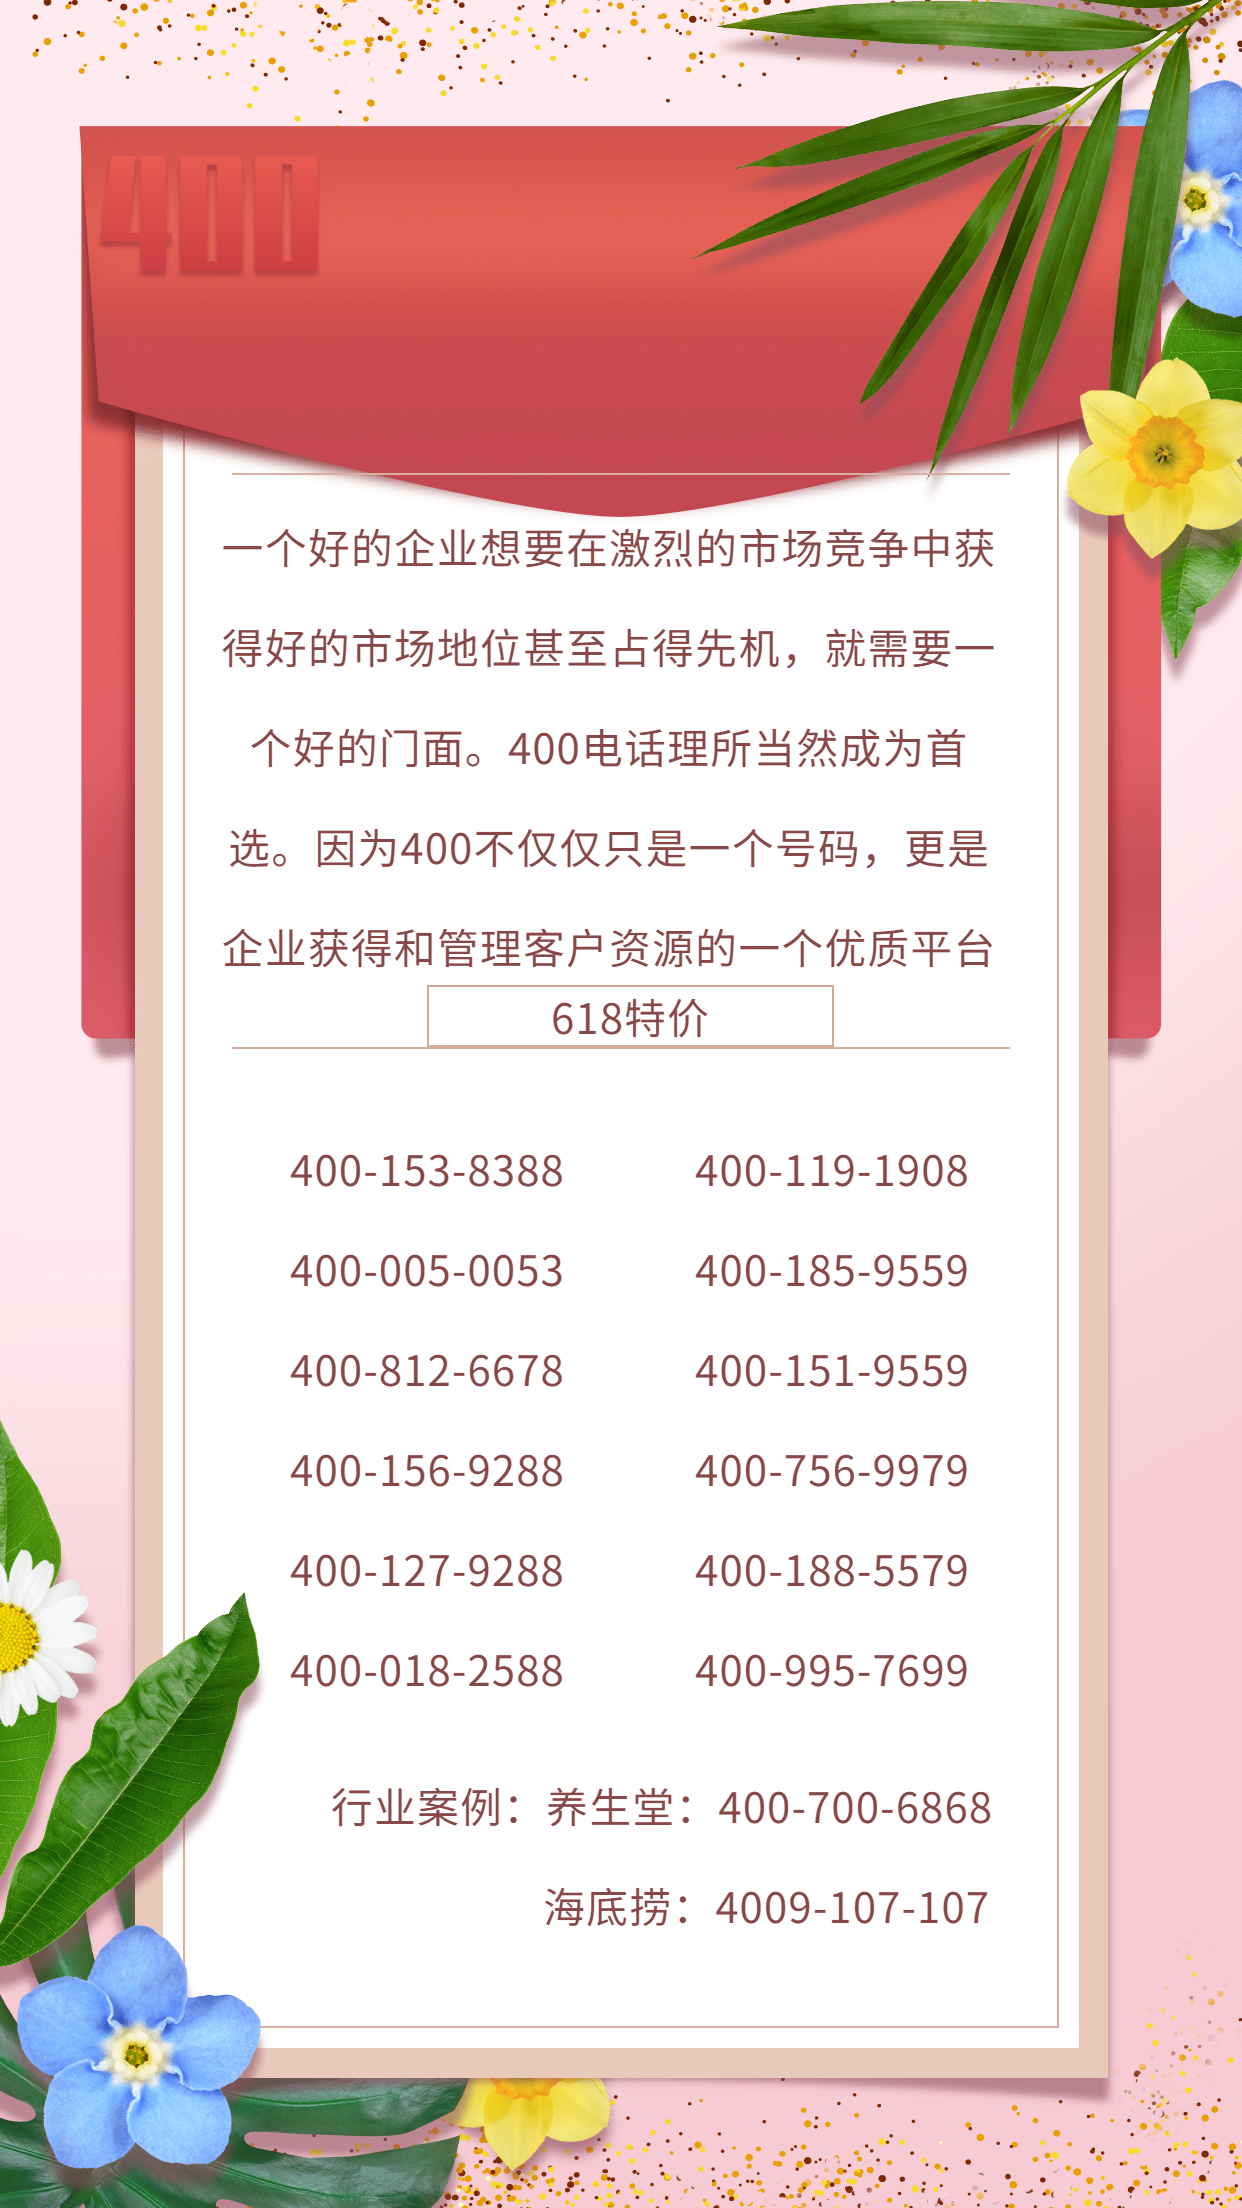 2022年6月16日 400电话优质号码申请办理推荐【618活动开启】